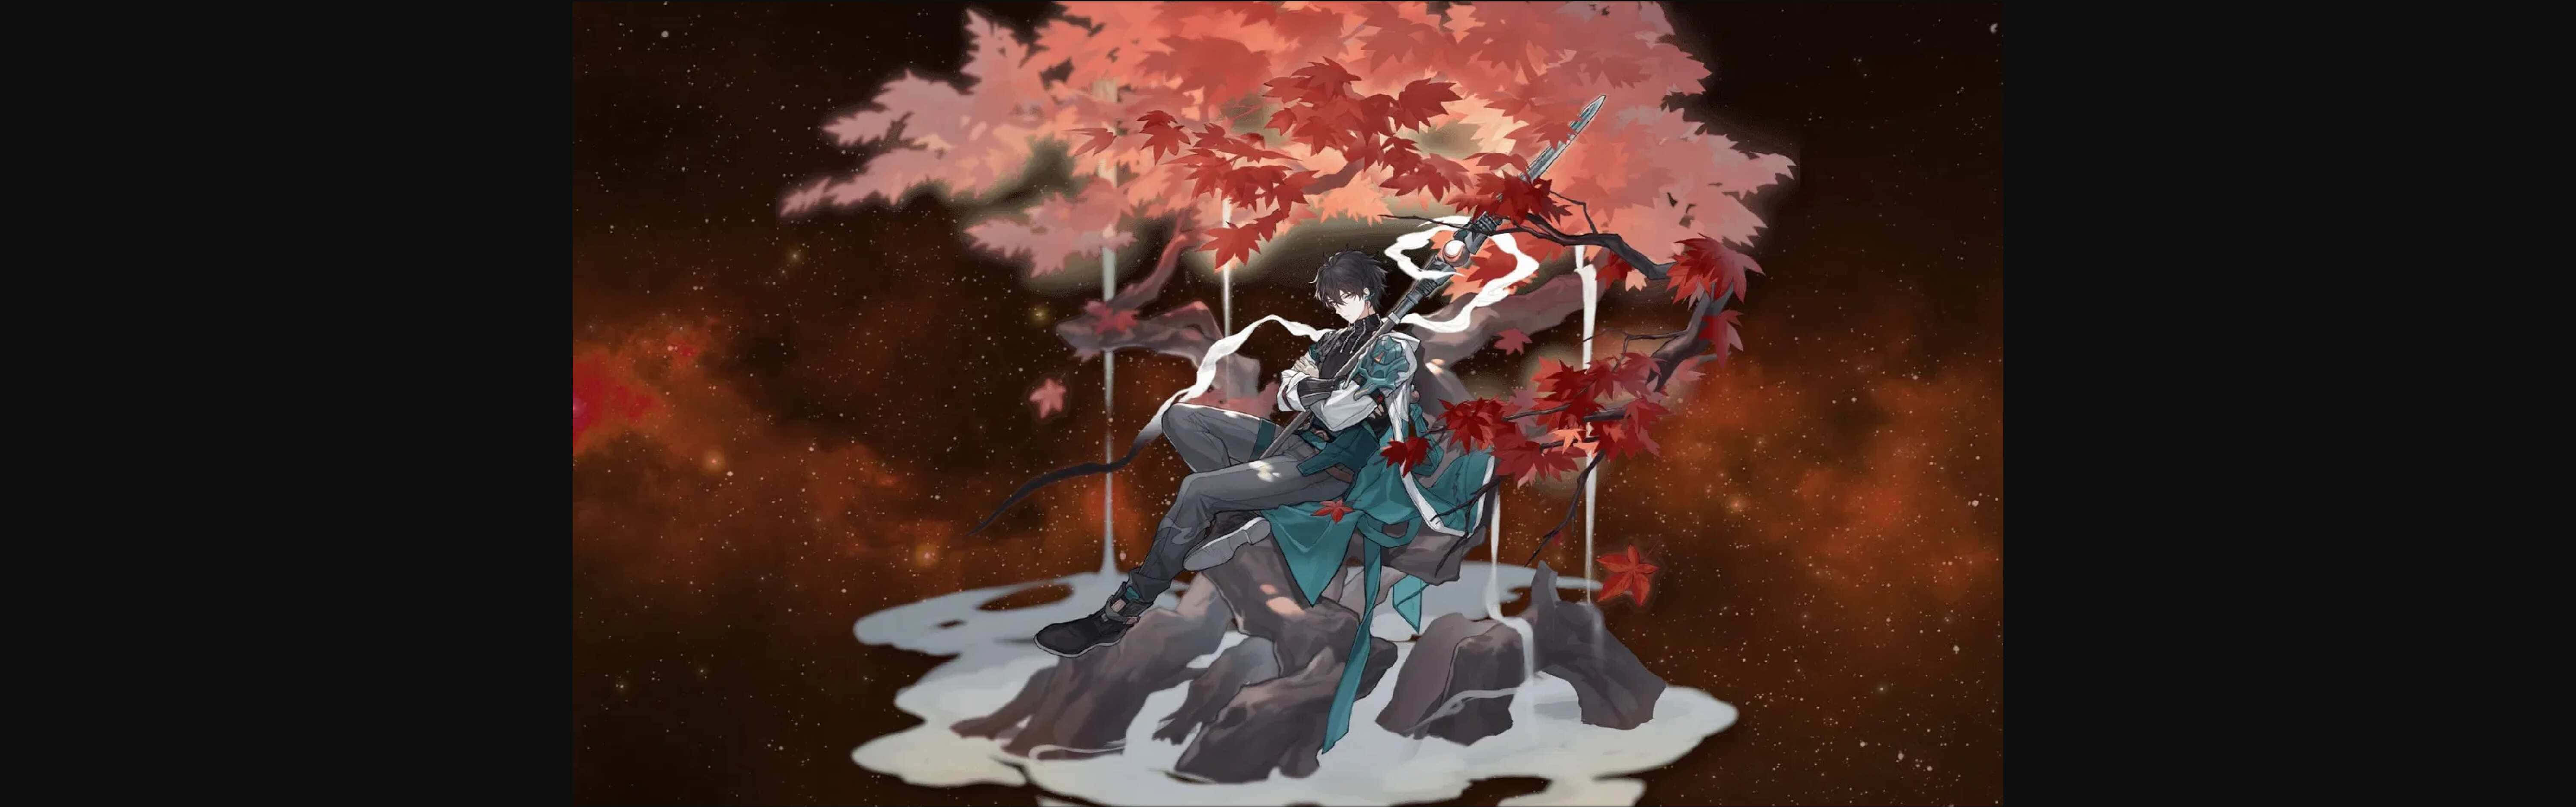 Samurai Warrior Autumn Battle Wallpaper